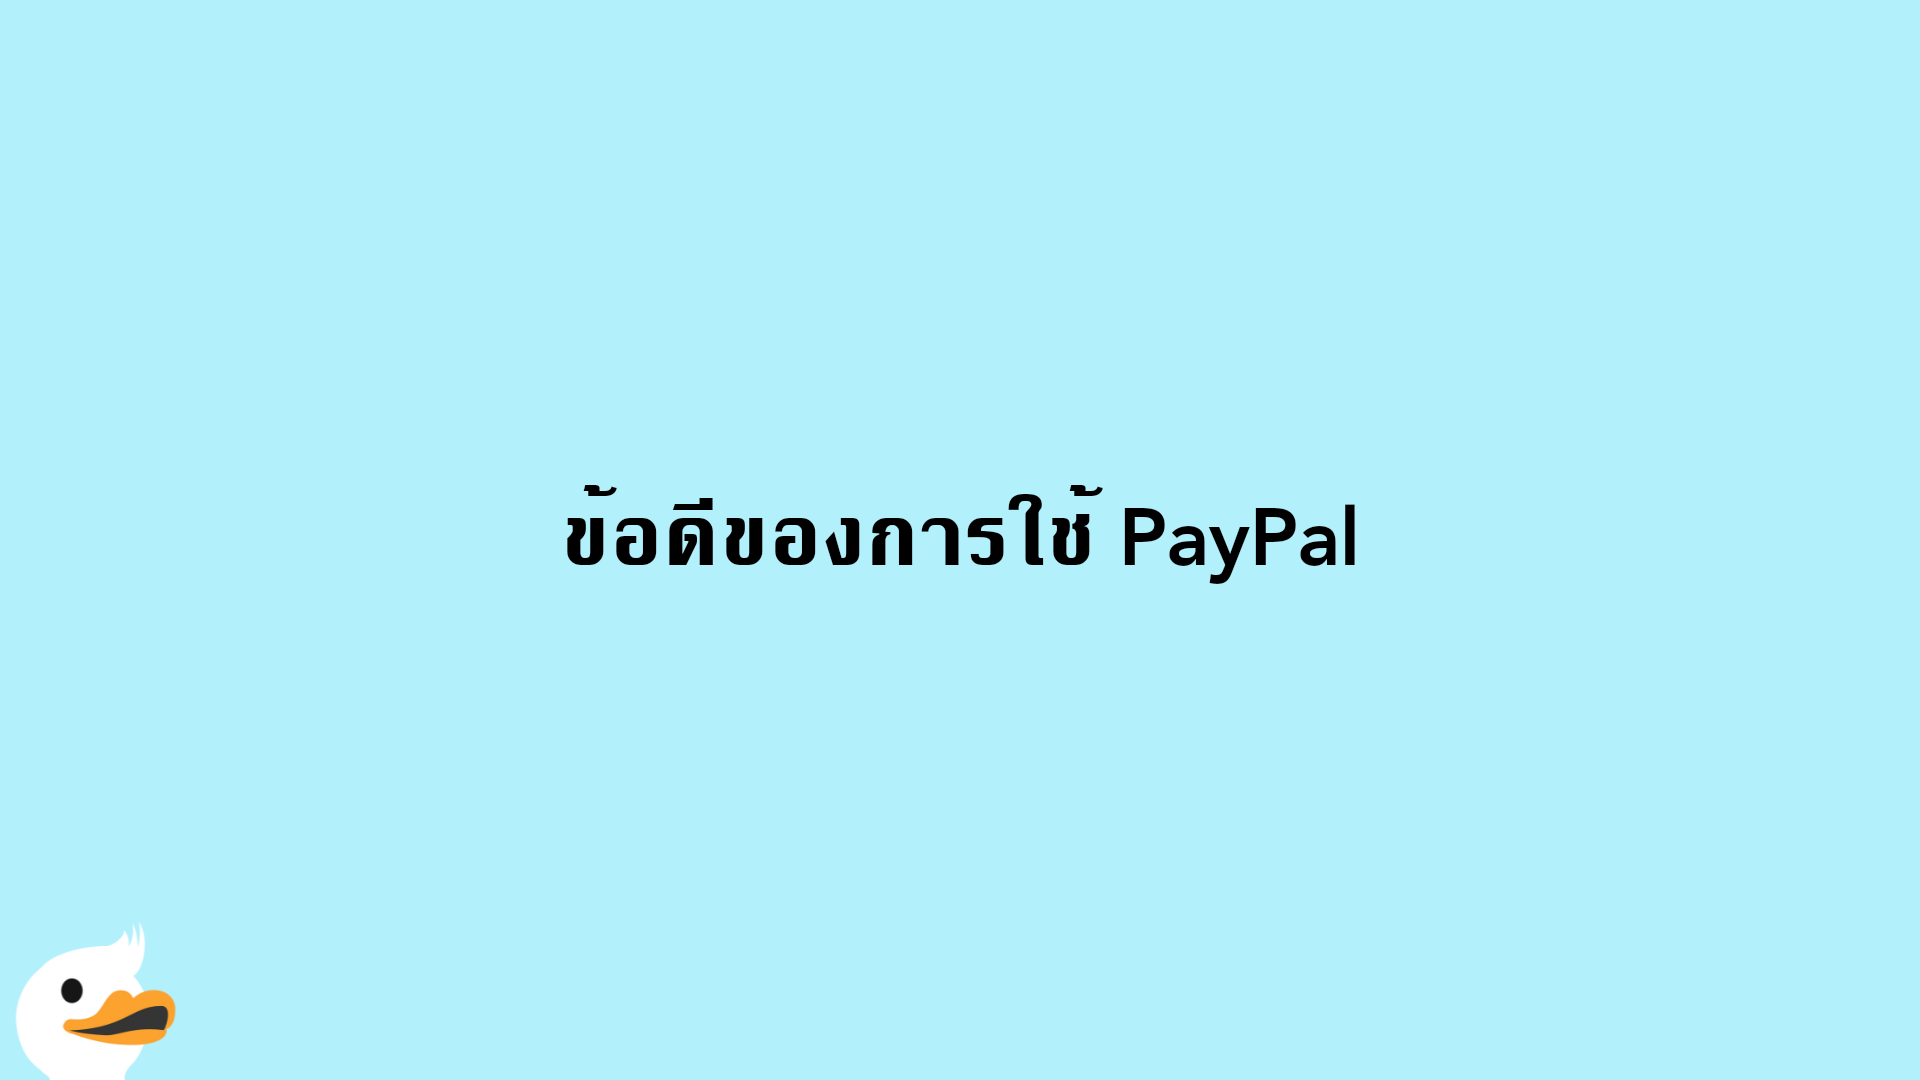 ข้อดีของการใช้ PayPal